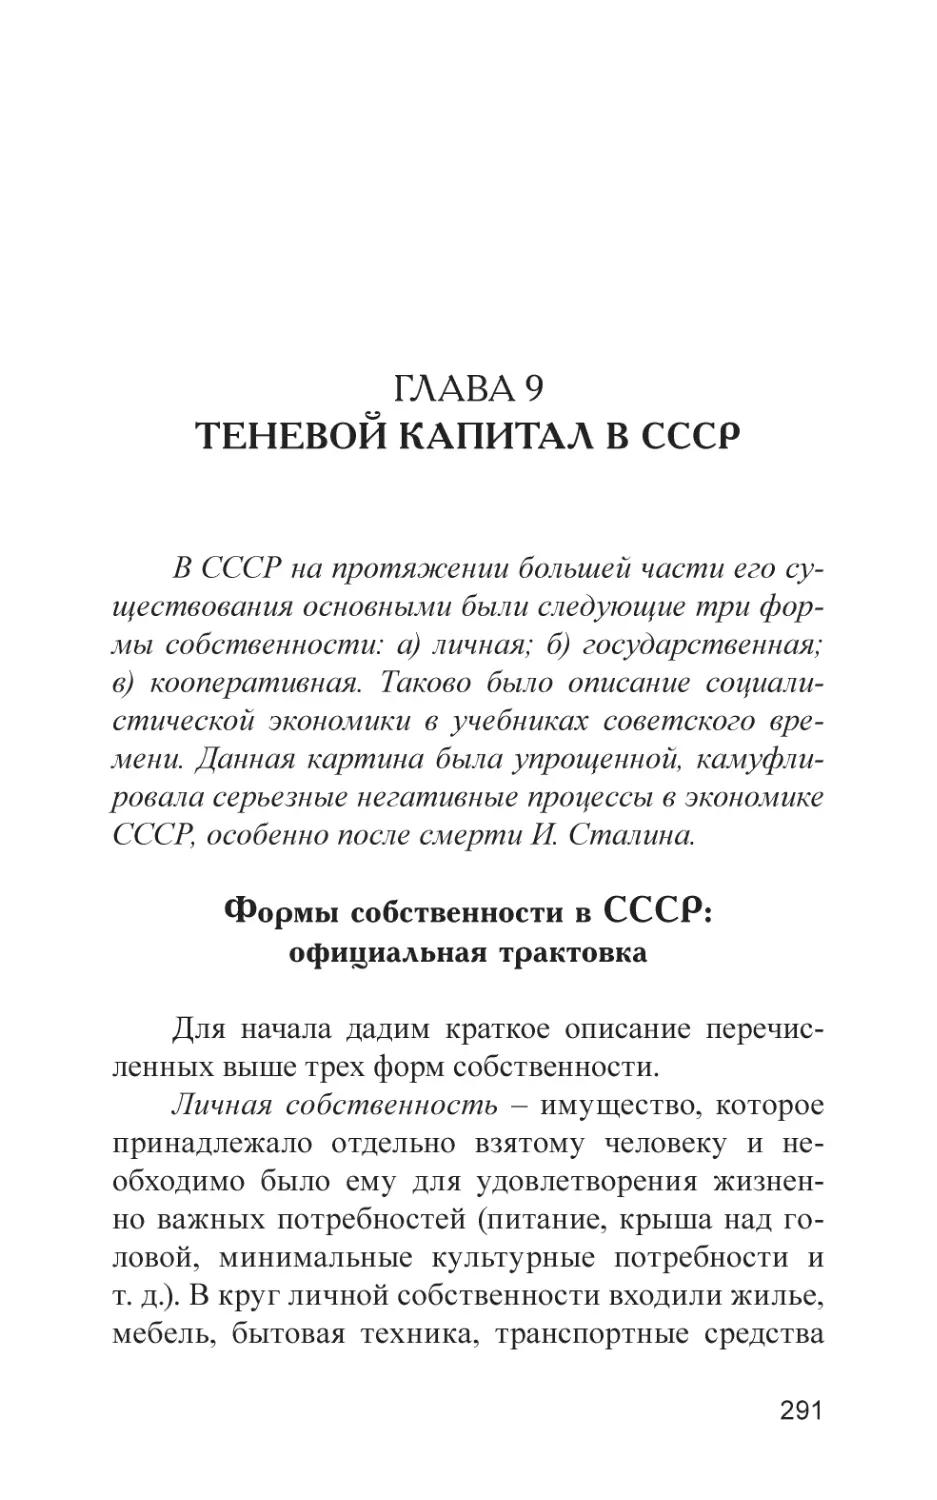 Глава 9. Теневой капитал в СССР
Формы собственности в СССР